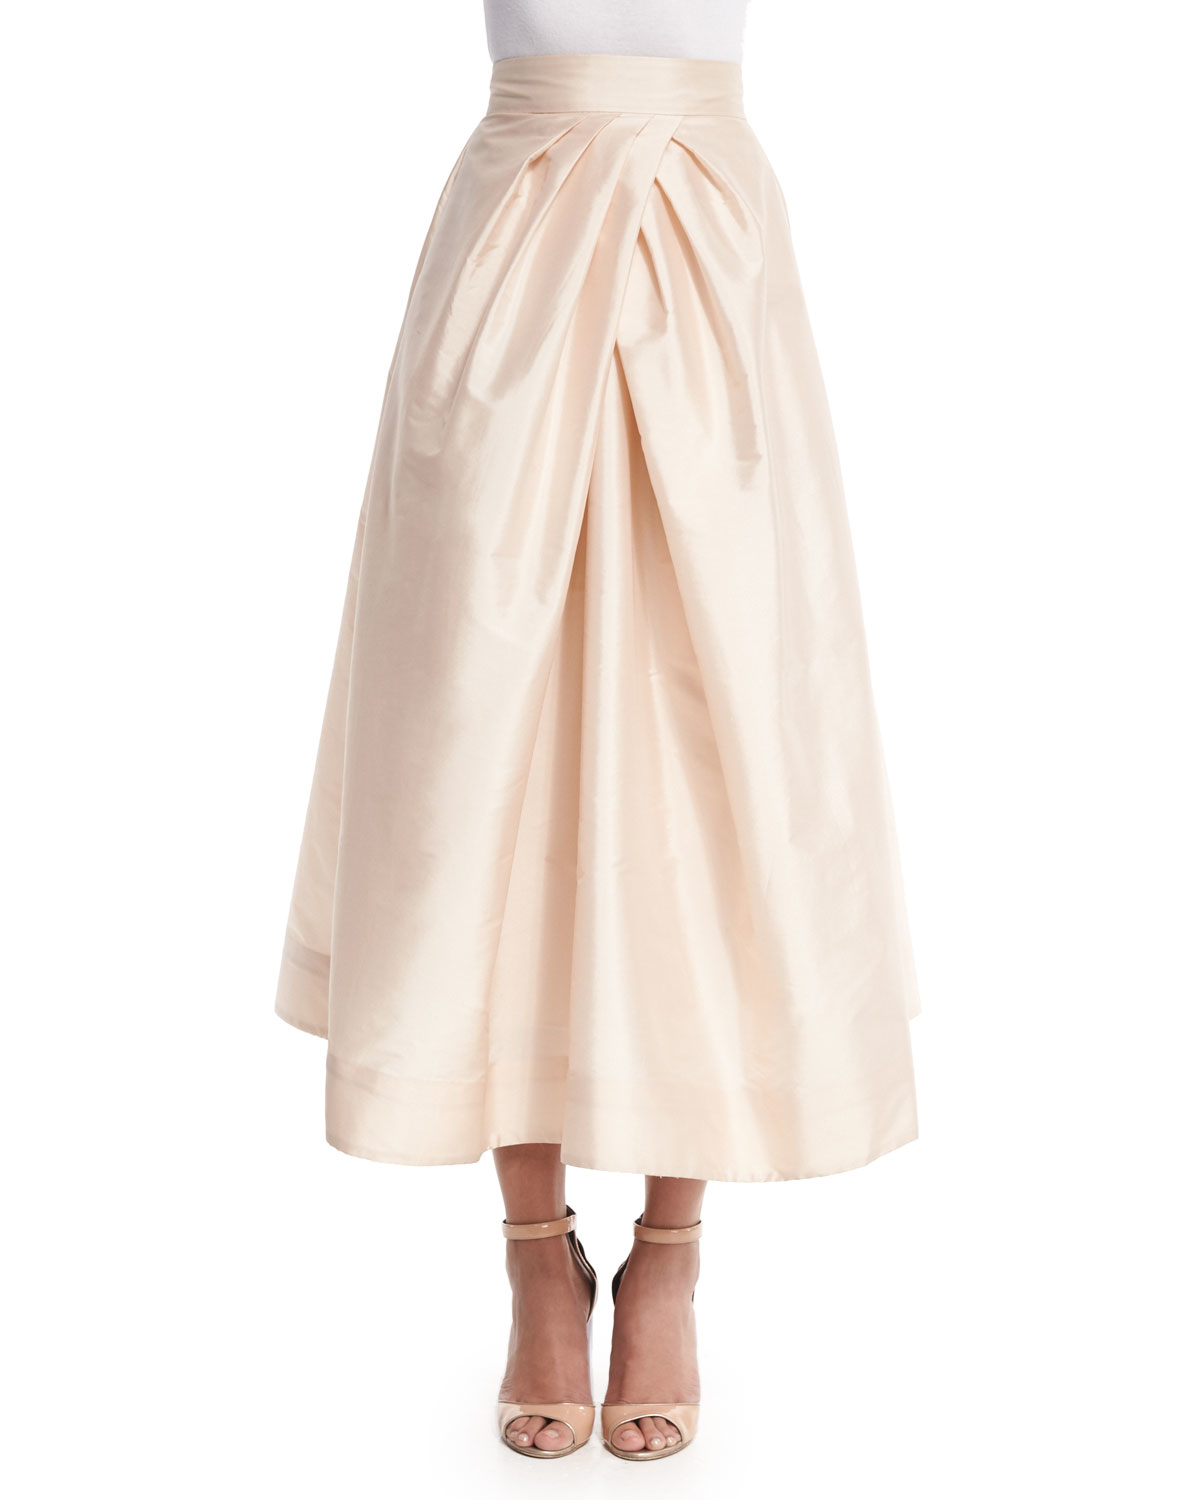 white tea length skirt